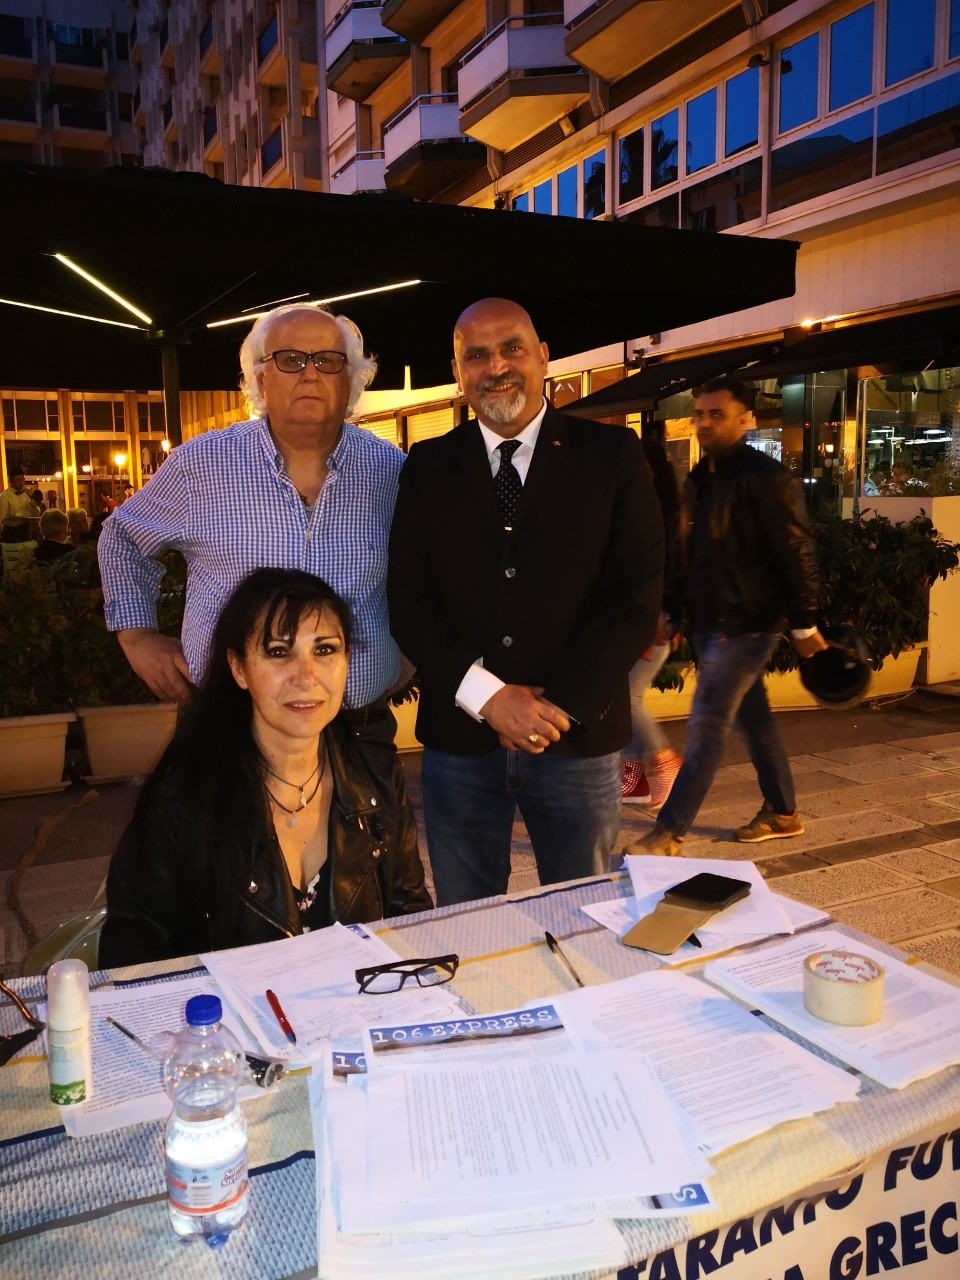 TARANTO. Prosegue la raccolta delle firme per l’attuazione del referendum consultivo finalizzato all’annessione di Taranto alla Regione Basilicata